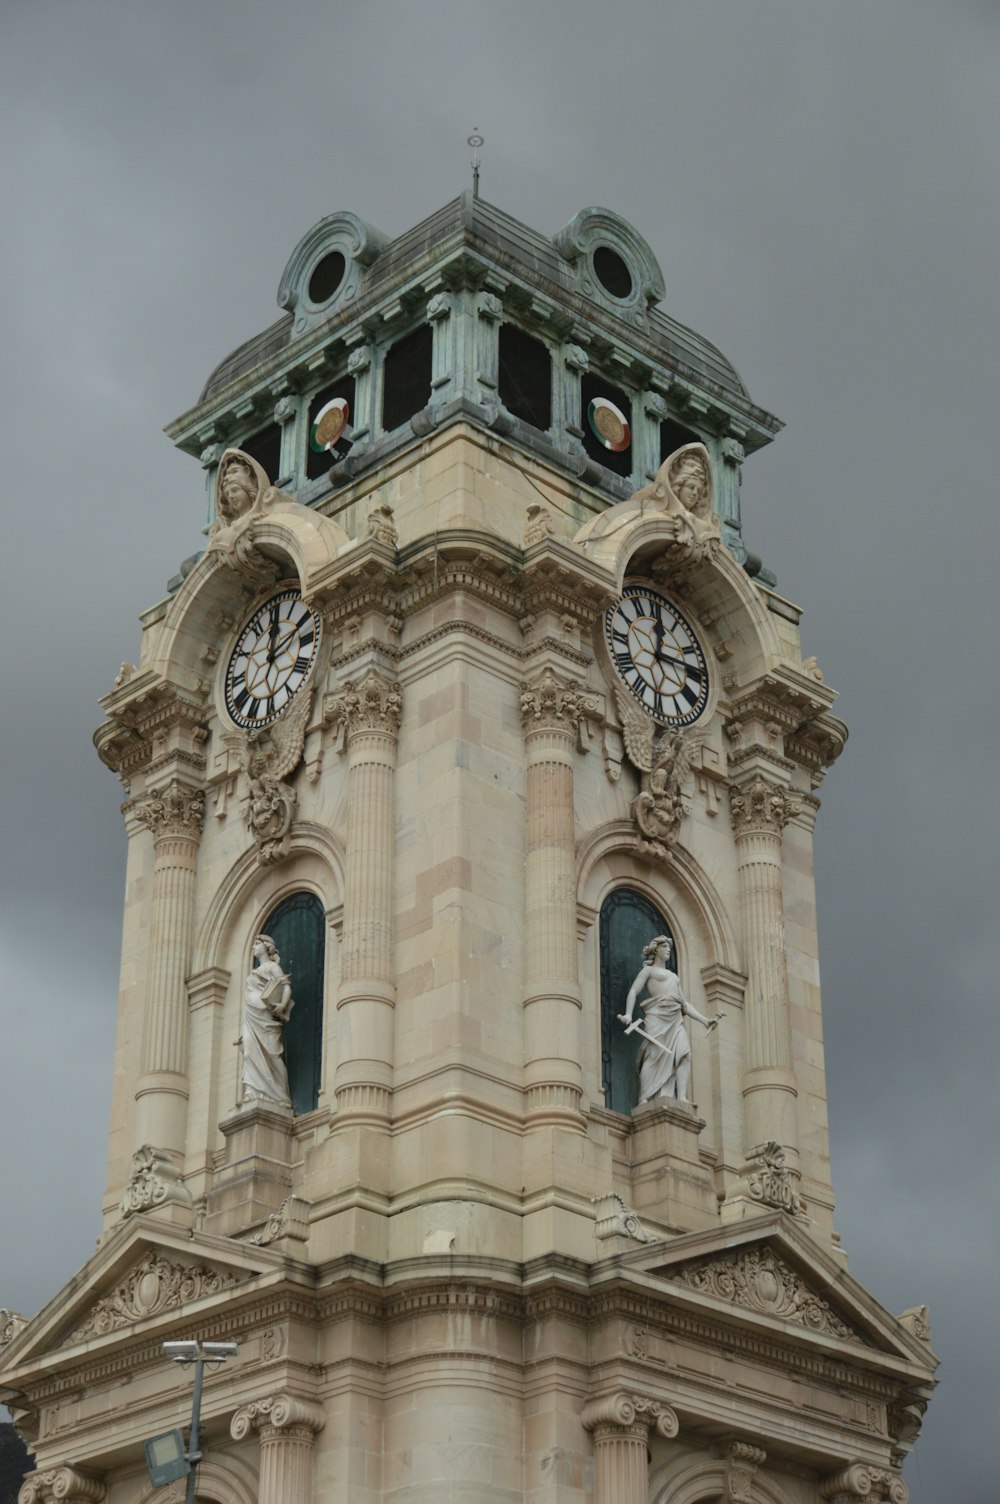 ein hoher Glockenturm mit einer Uhr an jeder Seite